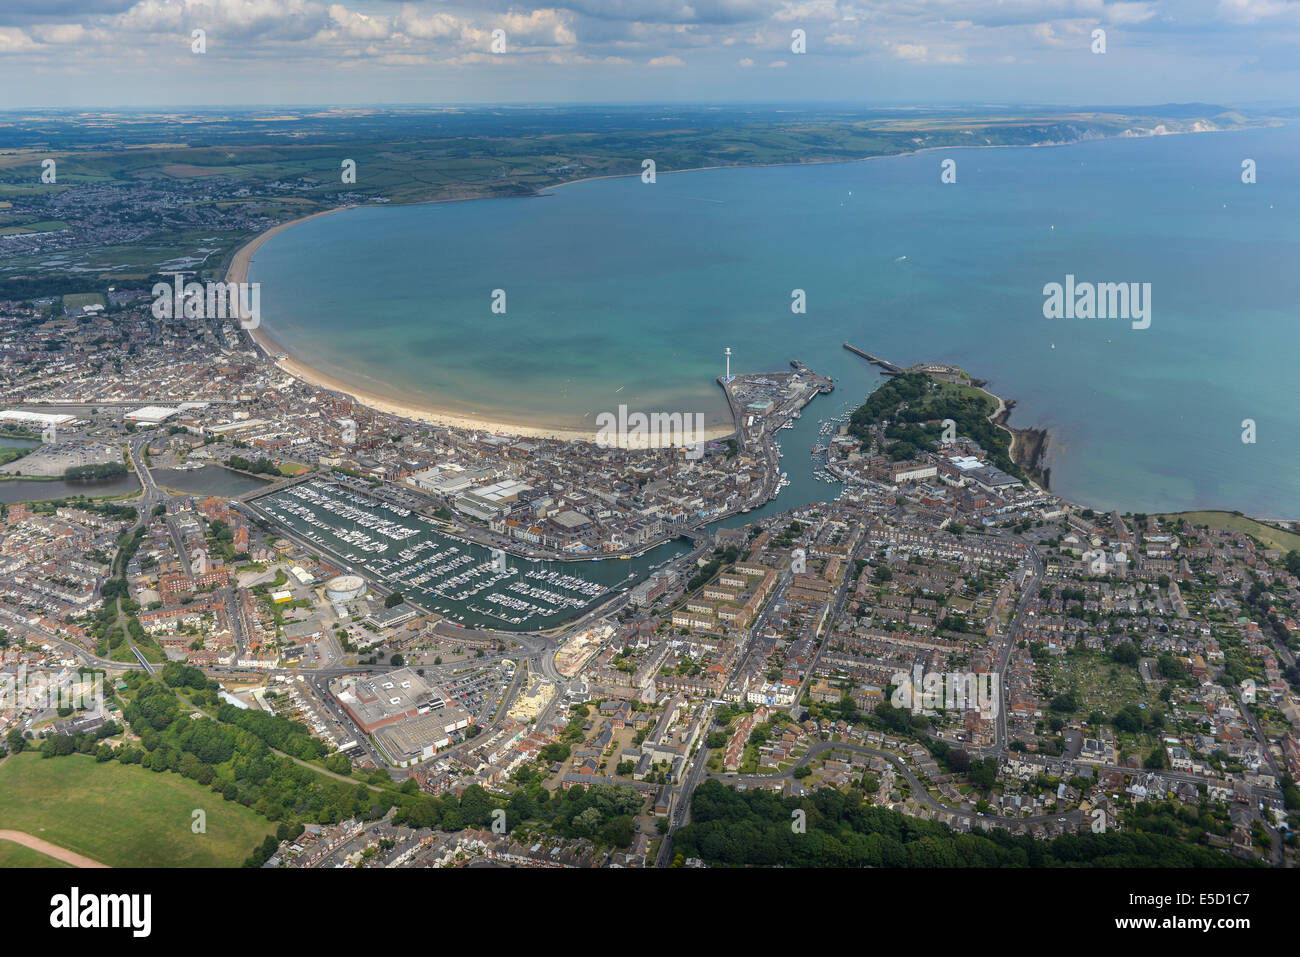 Une large vue aérienne de Weymouth avec le littoral et la campagne à proximité visible. Dorset, UK Banque D'Images